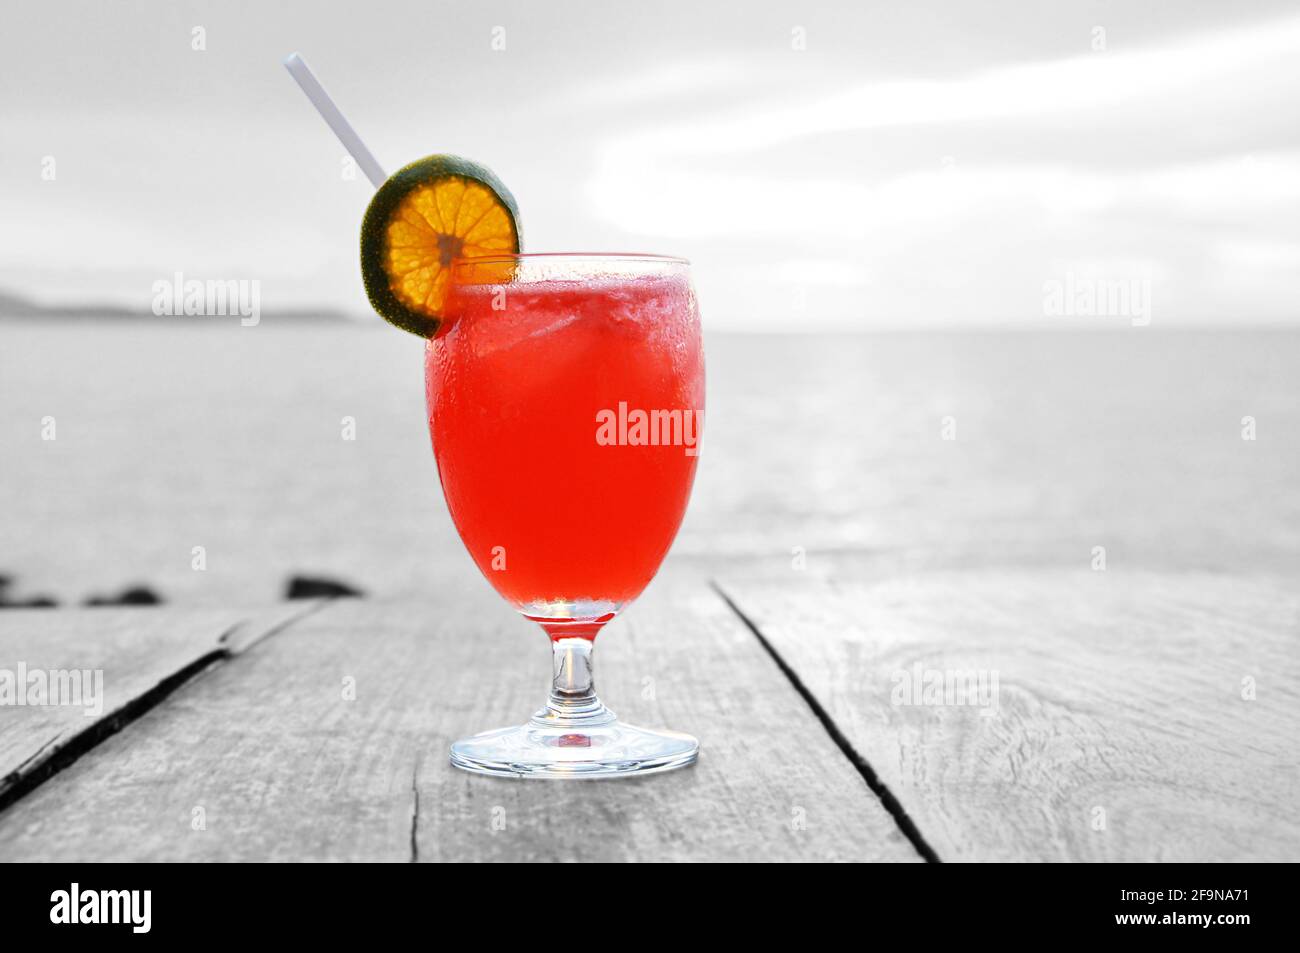 Cocktailgetränk mit Orangenscheibe als Beilage auf altem Holztisch und Meereswasser Hintergrund Stockfoto